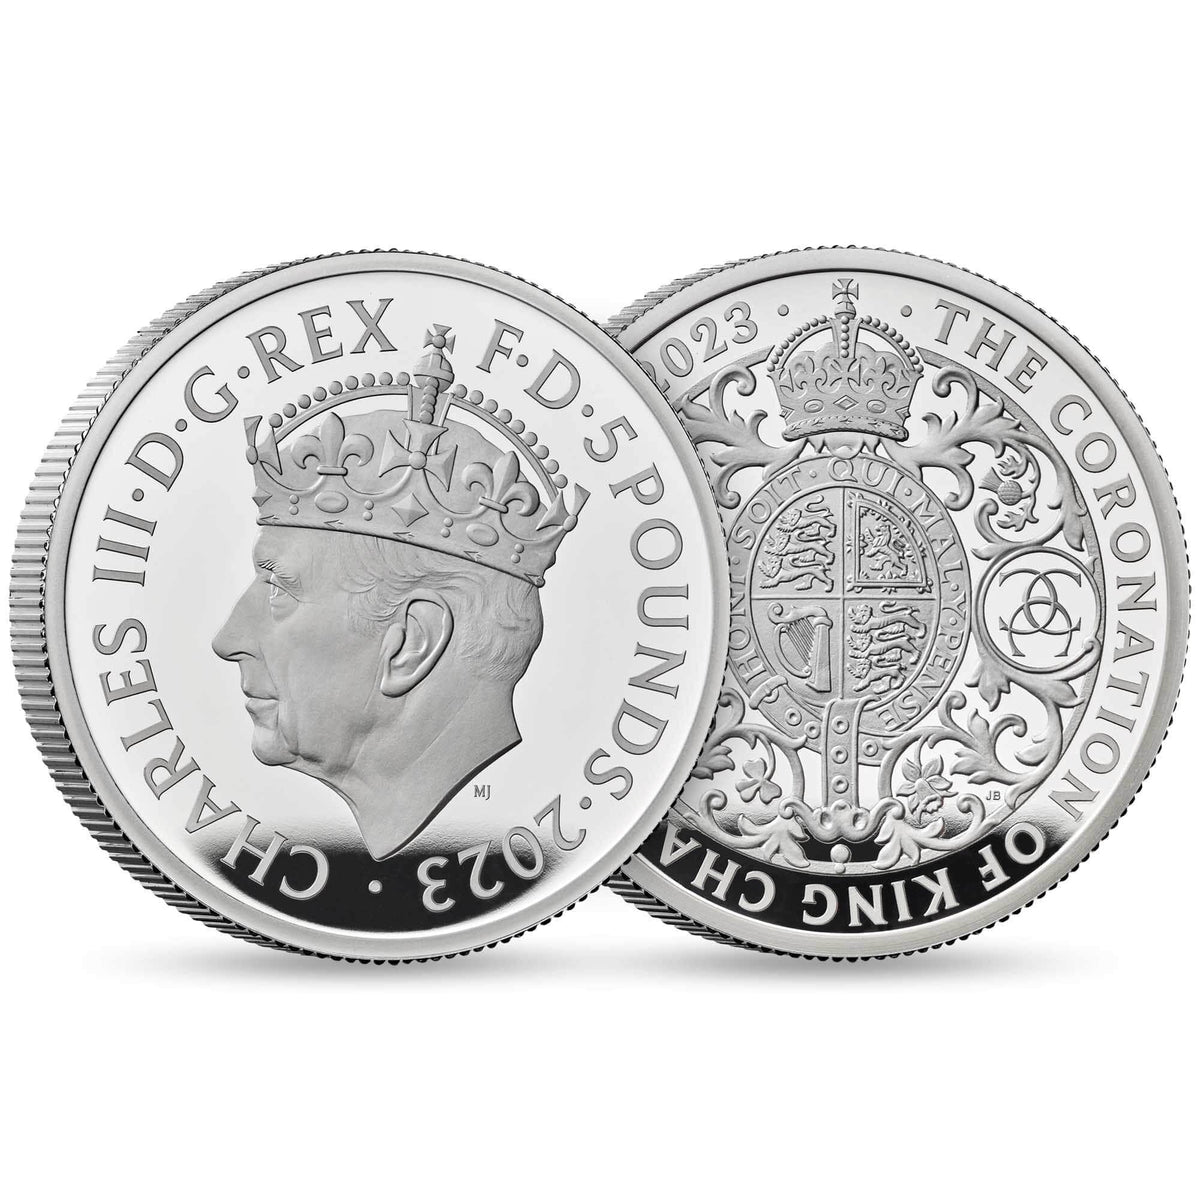 2023 チャールズ3世 戴冠式記念コイン 2オンスプルーフ銀貨 